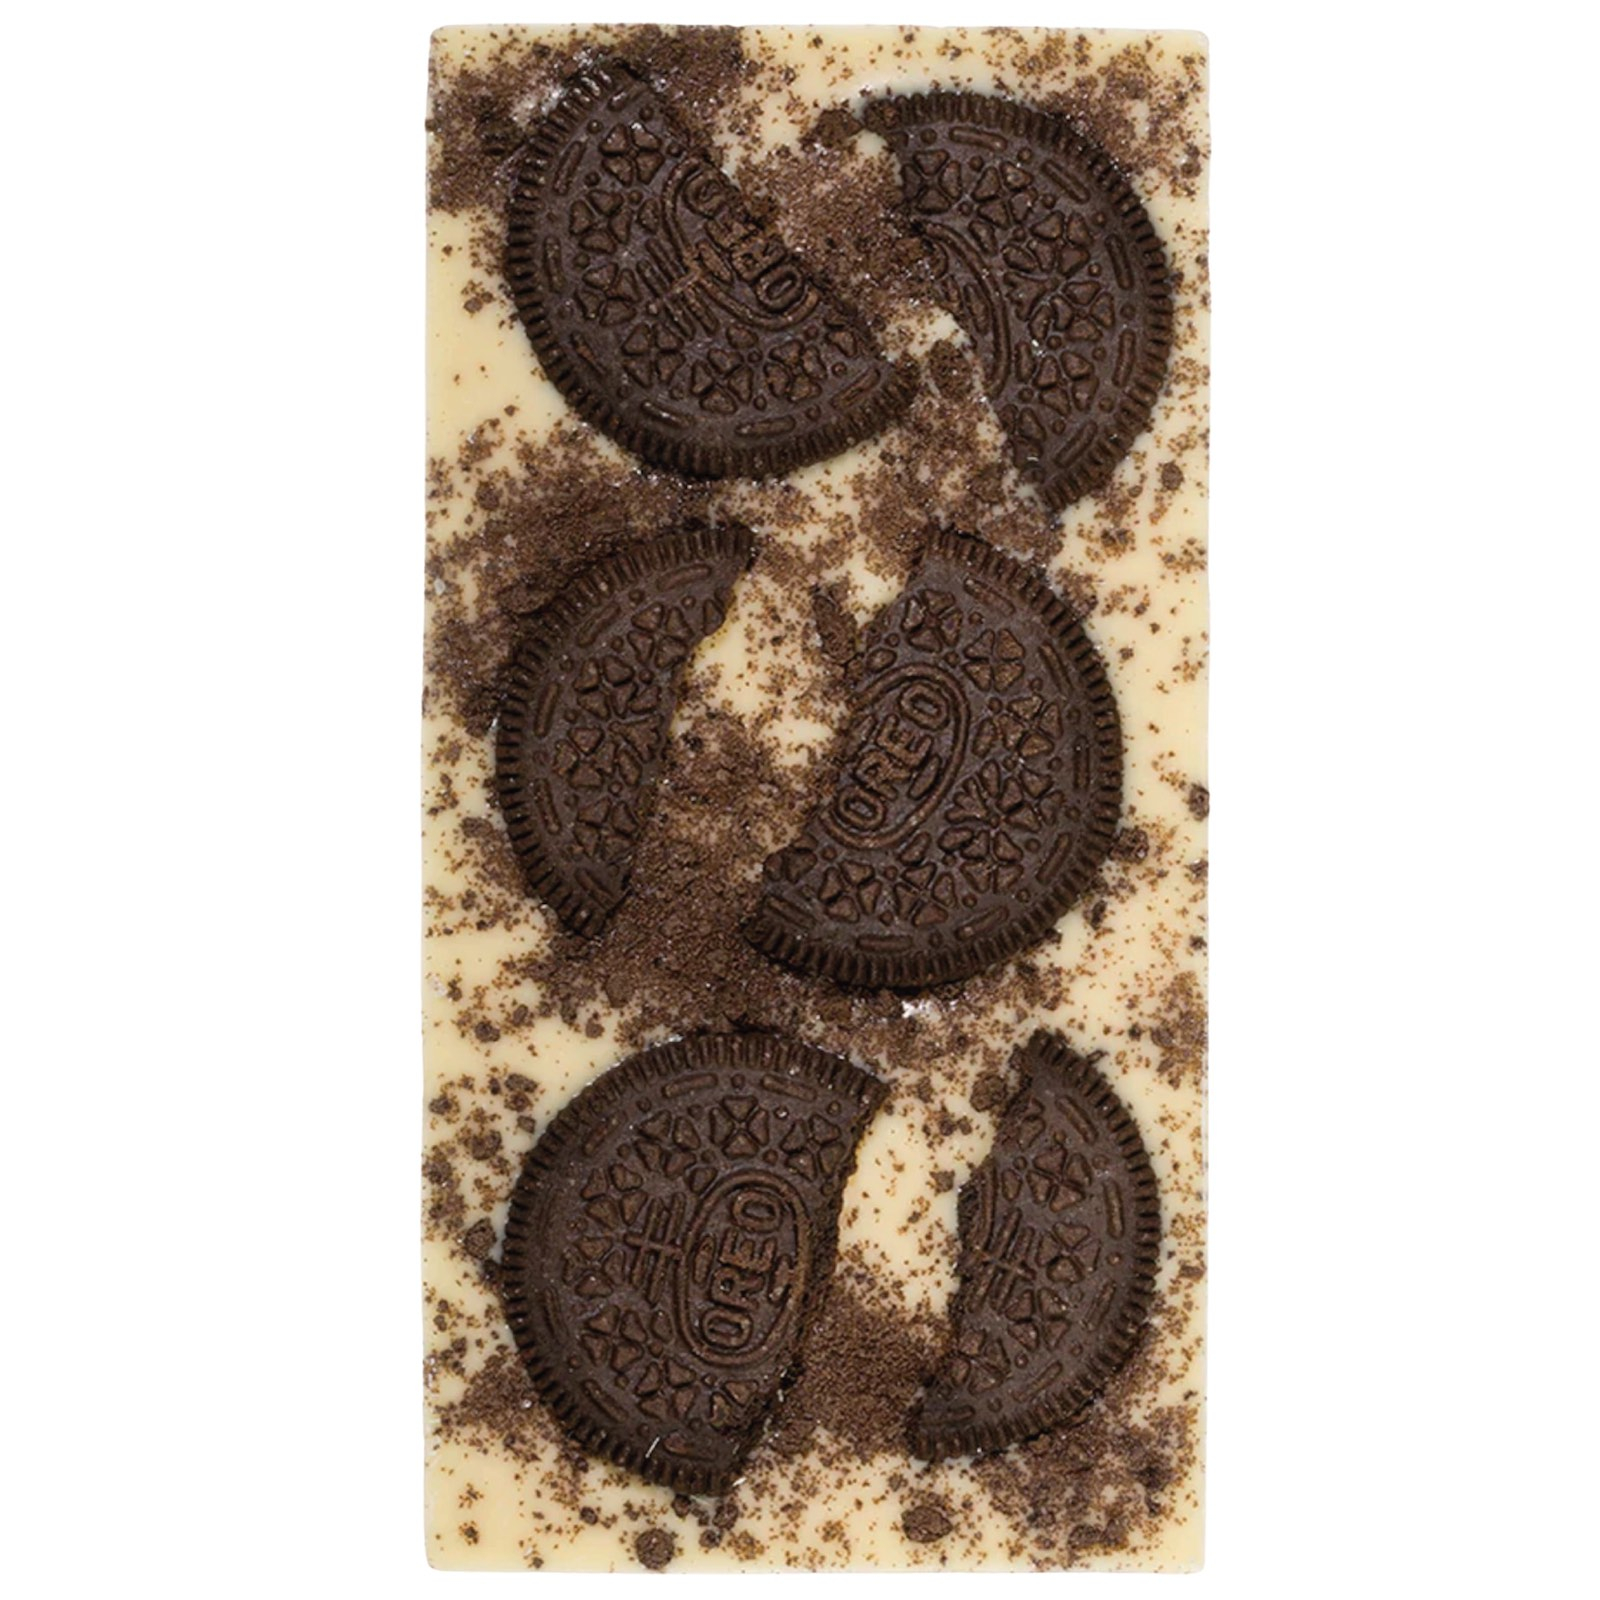 Cookies & Cream. Tabletă ciocolată albă cu cookies și frișcă 100G - Produs handmade